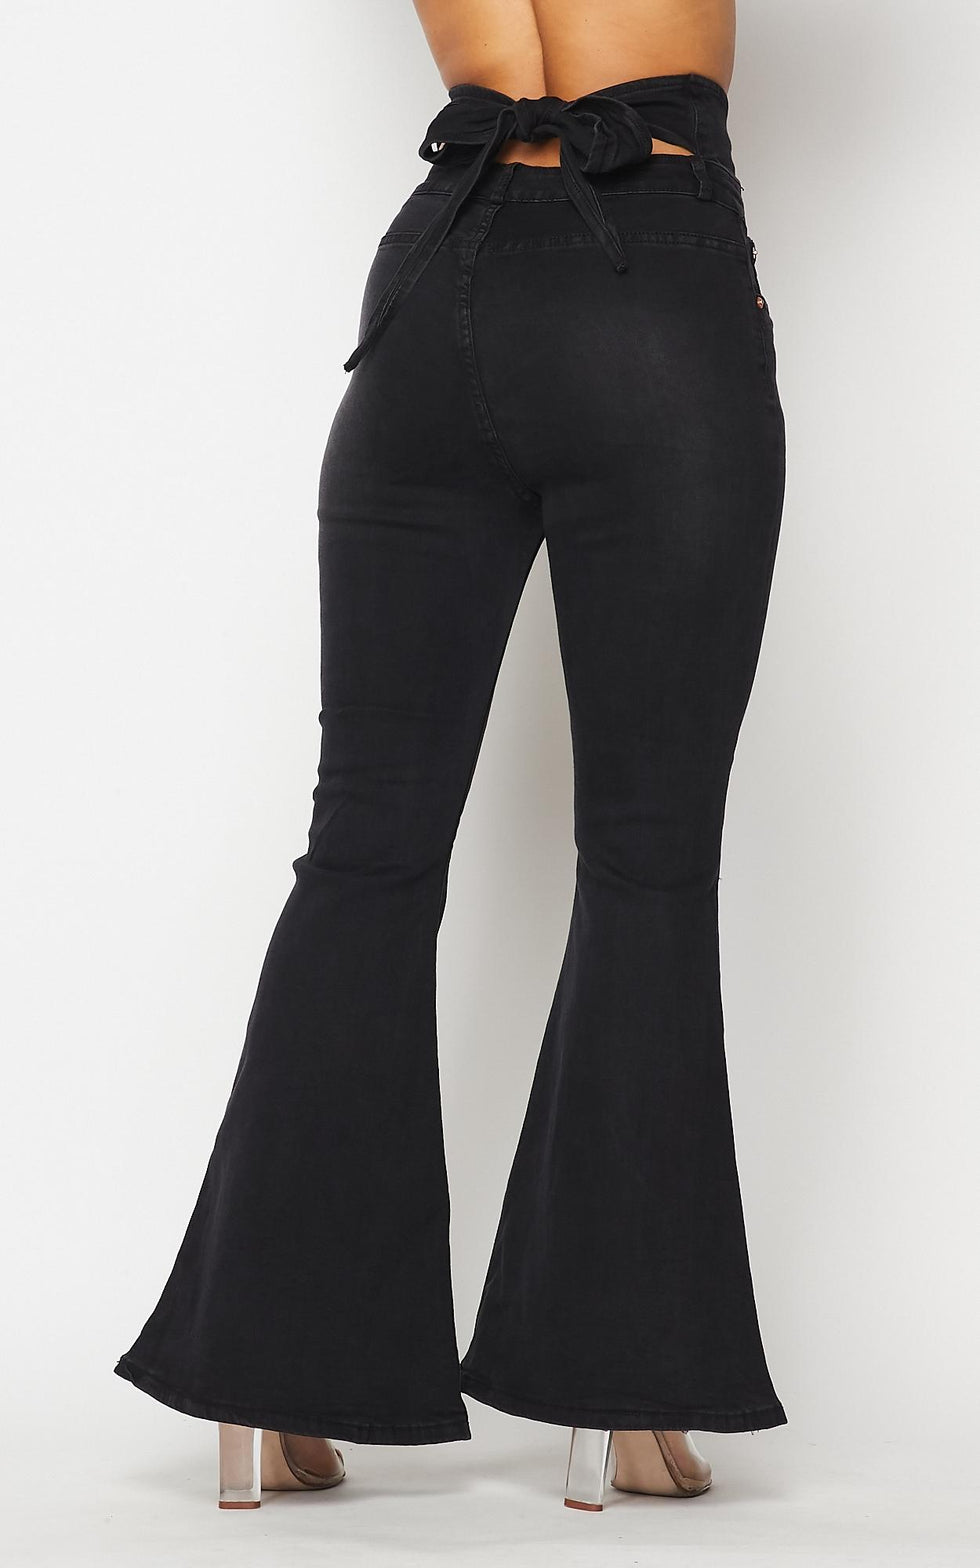 Belted Waist Bell Bottom Jeans - Black – SohoGirl.com